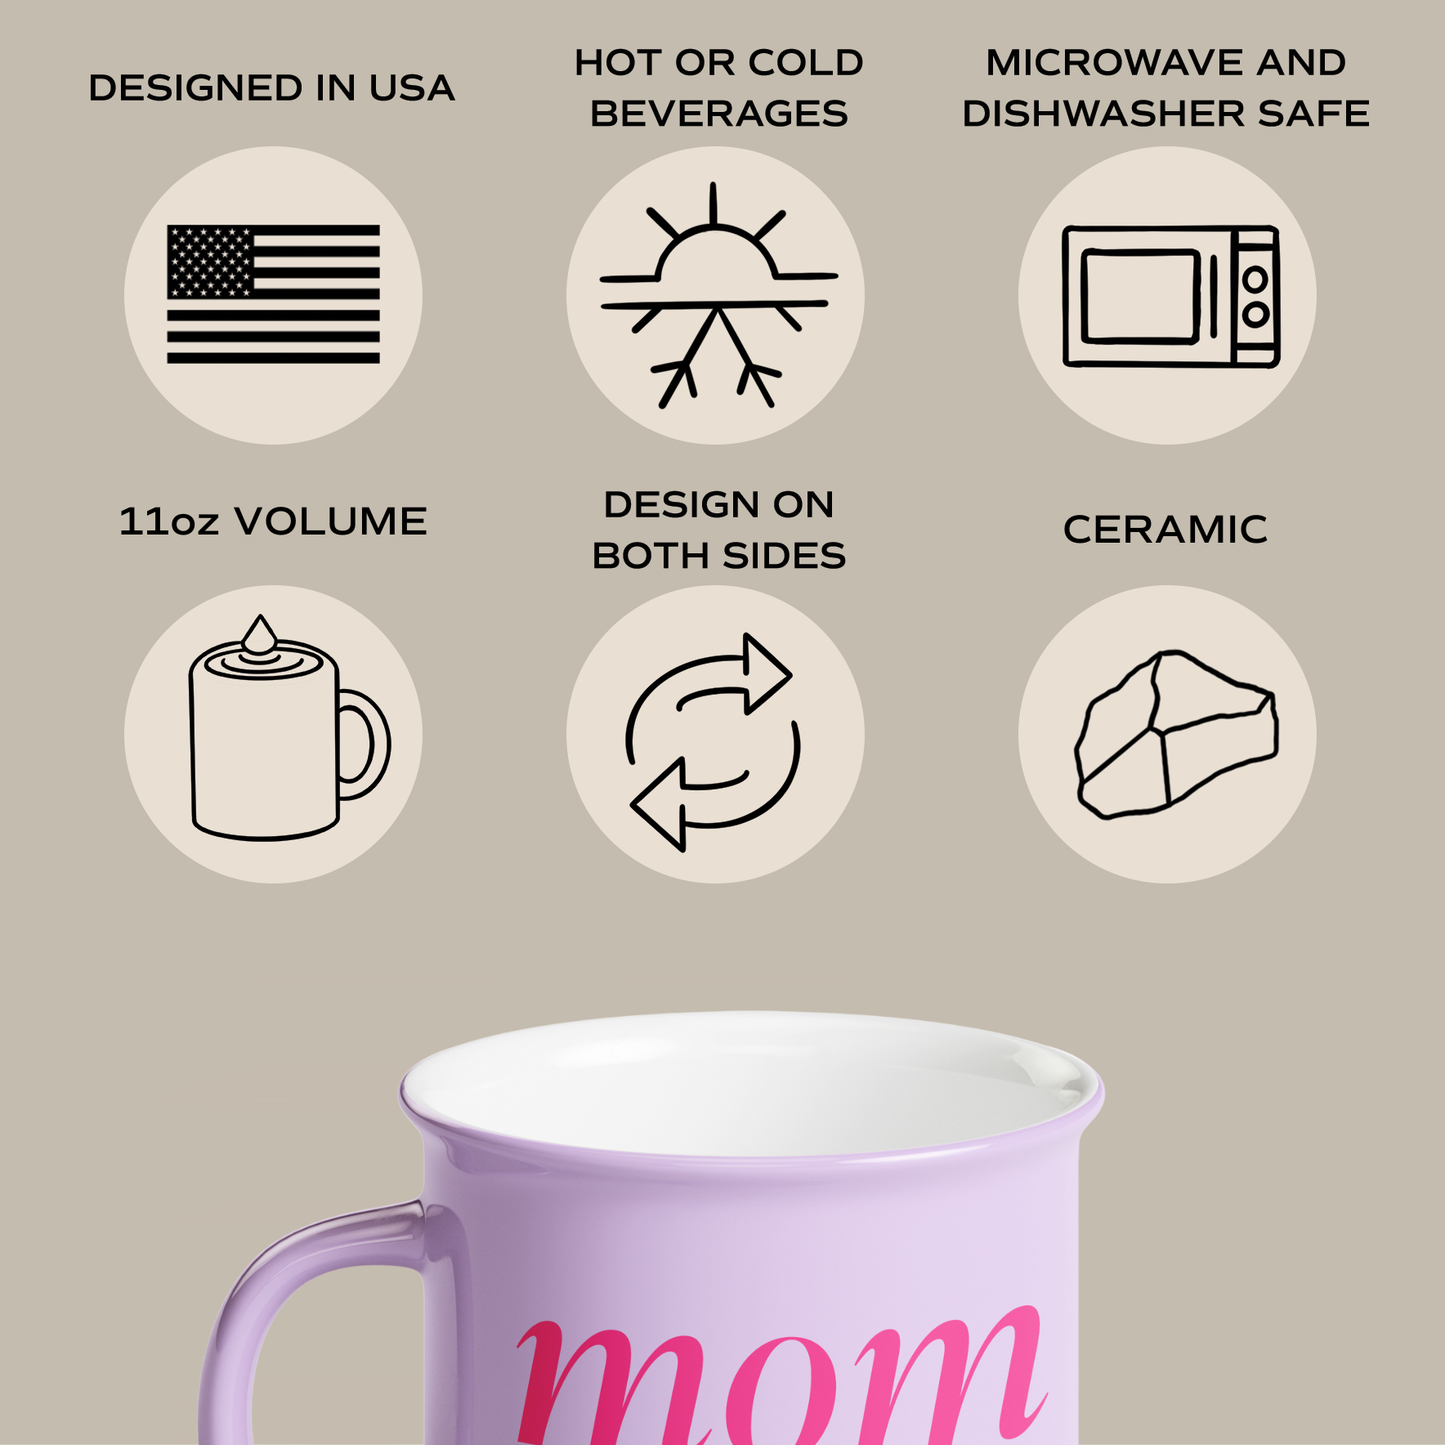 Mom Life 11 oz Campfire Coffee Mug - Home Decor